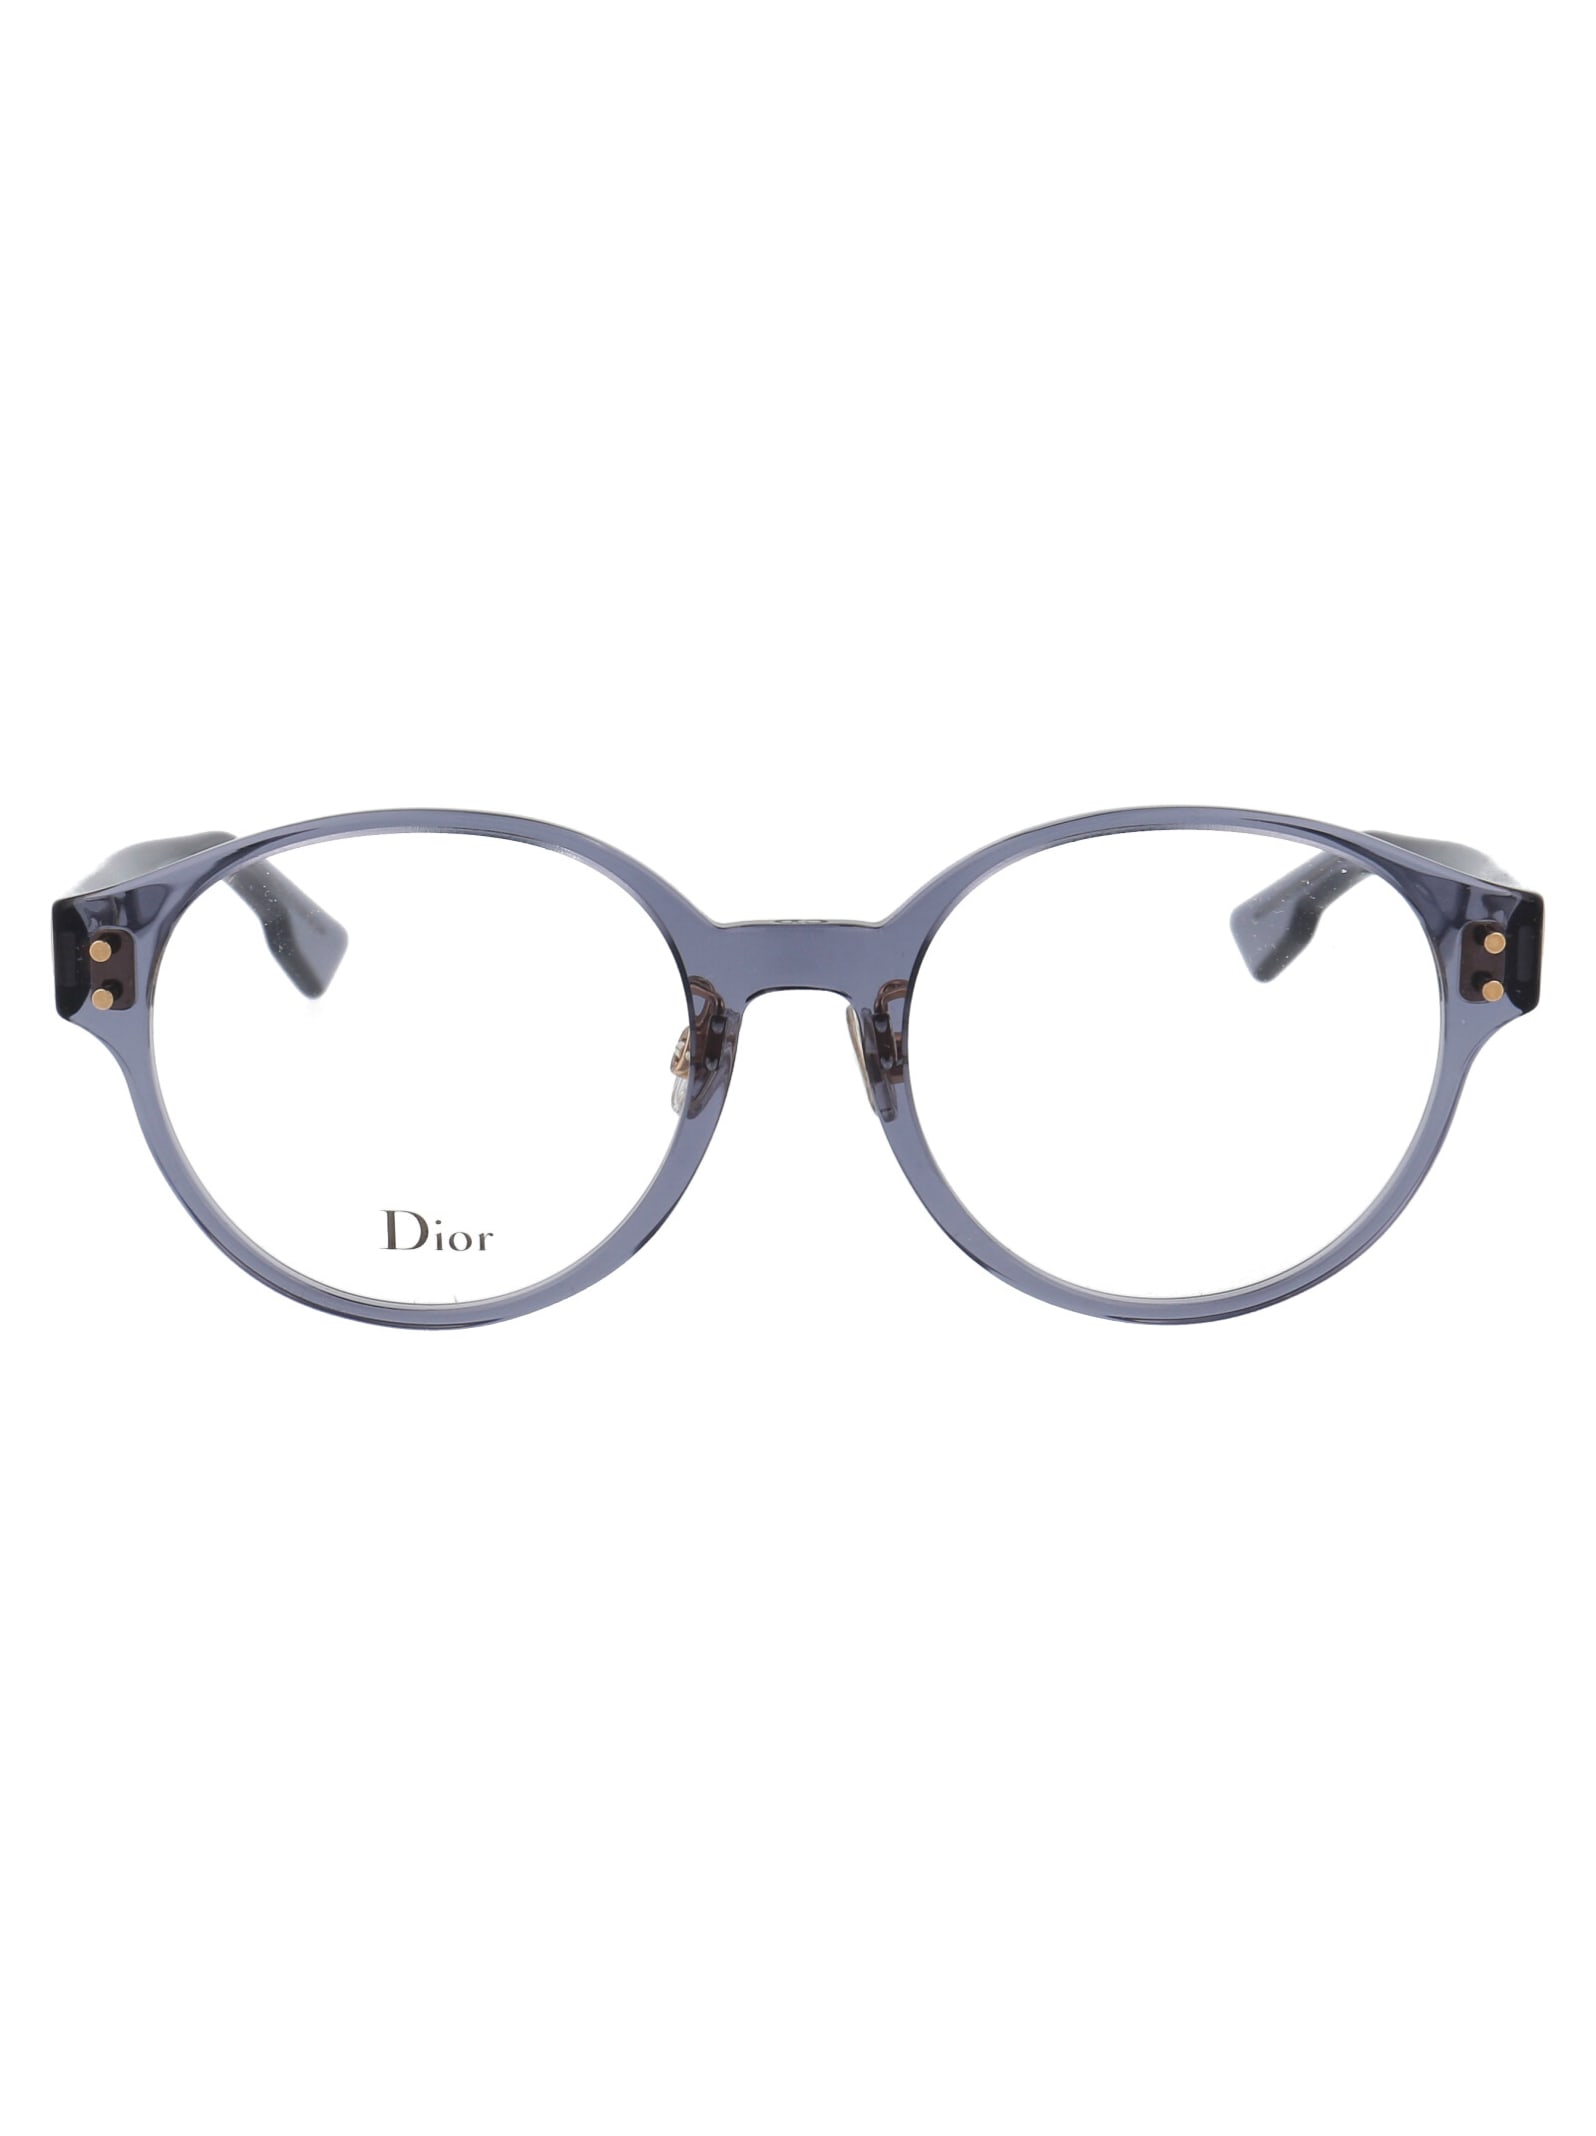 Dior Cd3f Glasses In Pjp Blue